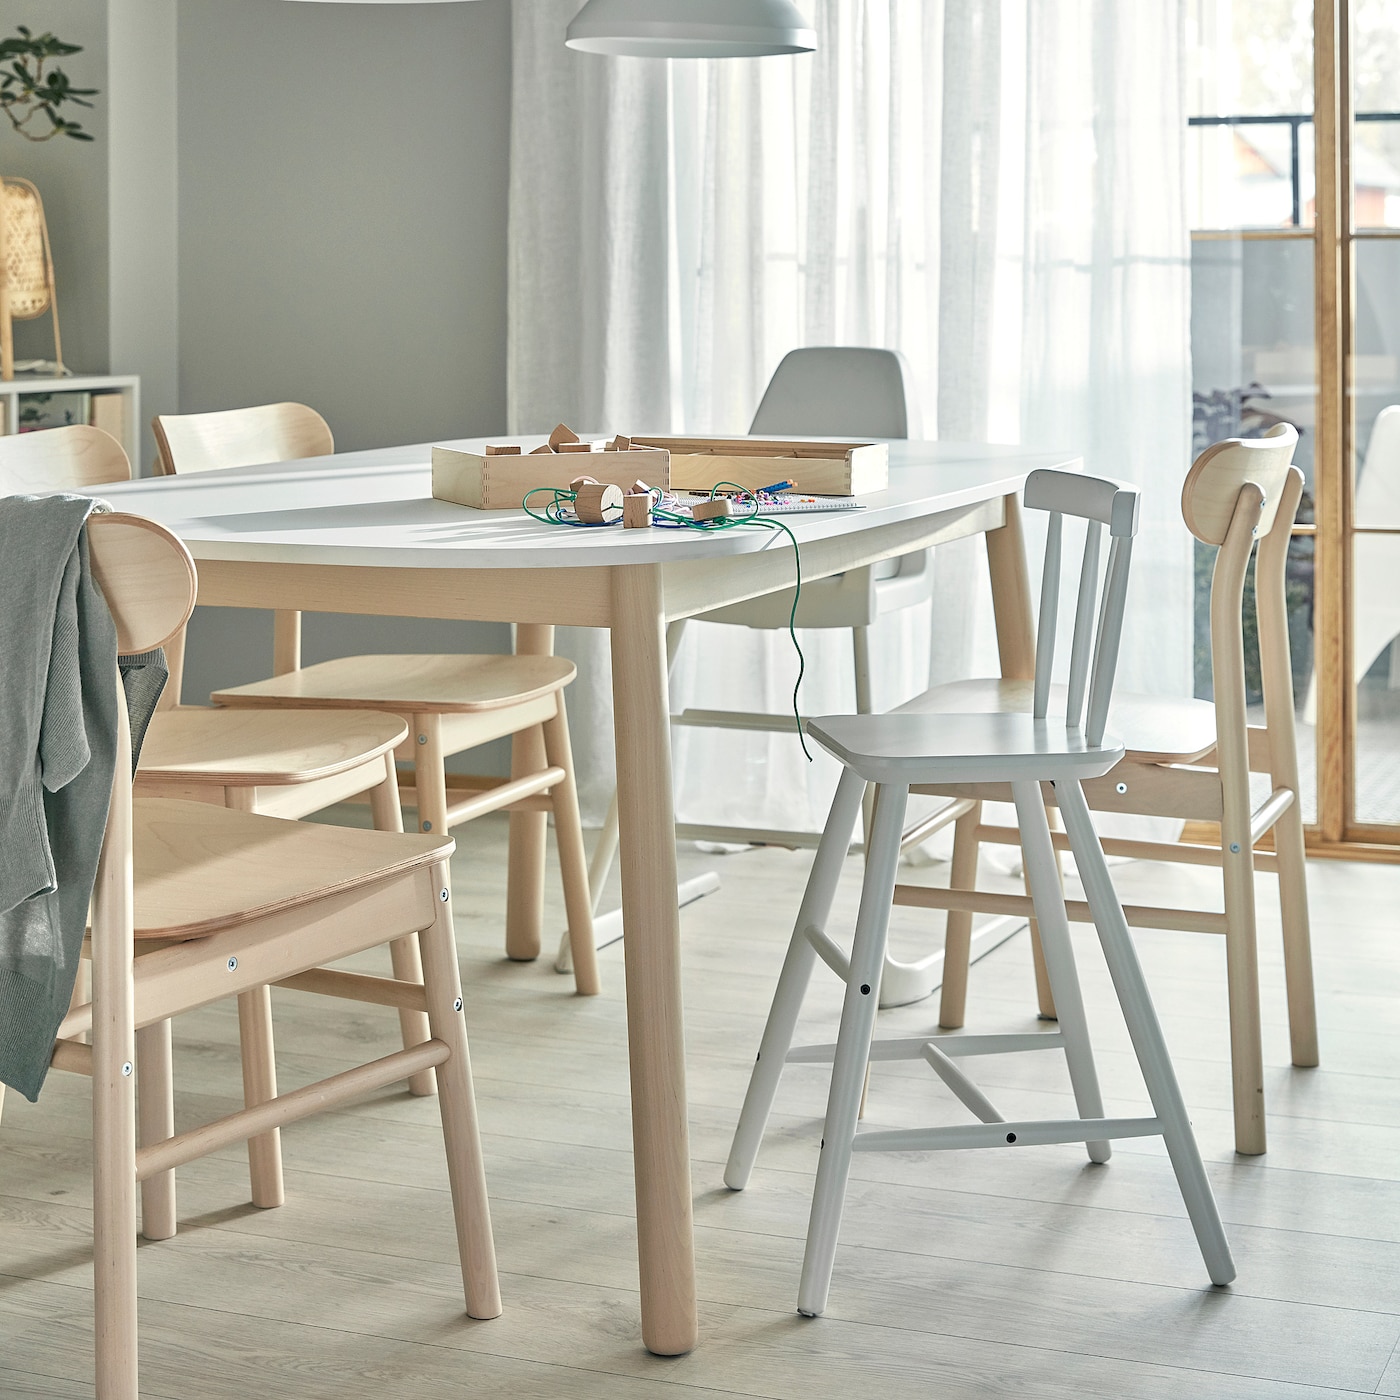 AGAM junior chair white - IKEA